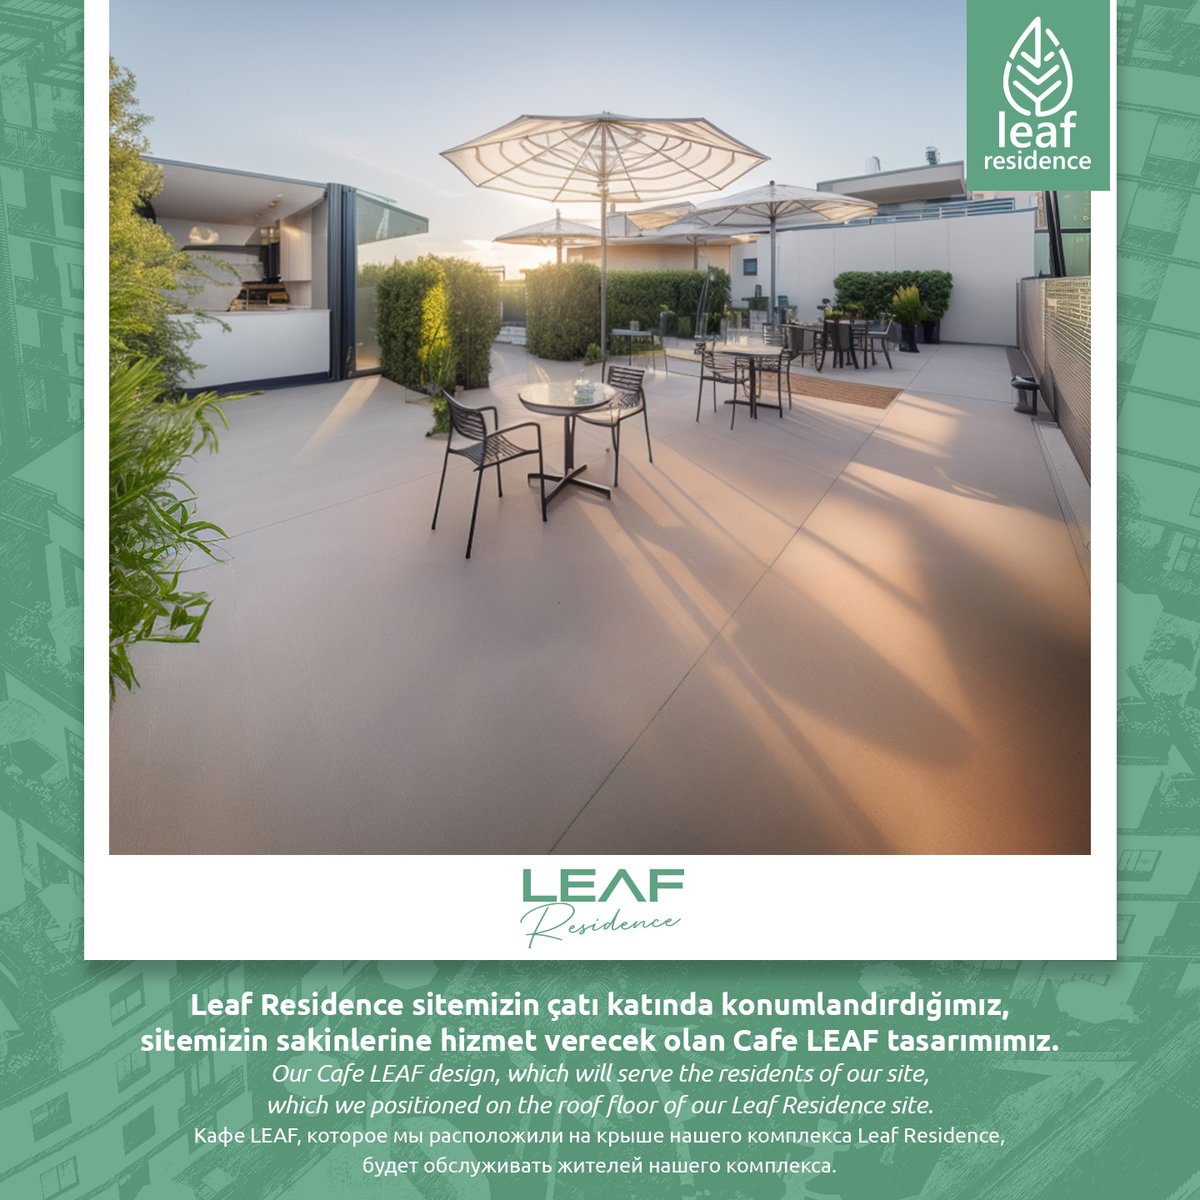 #LeafRezidans sitemizin çatı katında konumlandırdığımız, sitemizin sakinlerine hizmet verecek olan #Cafe LEAF tasarımımız.
Our Cafe #LEAF design, which will serve the residents of our site,which we positioned on the roof floor of our Leaf Residence site.